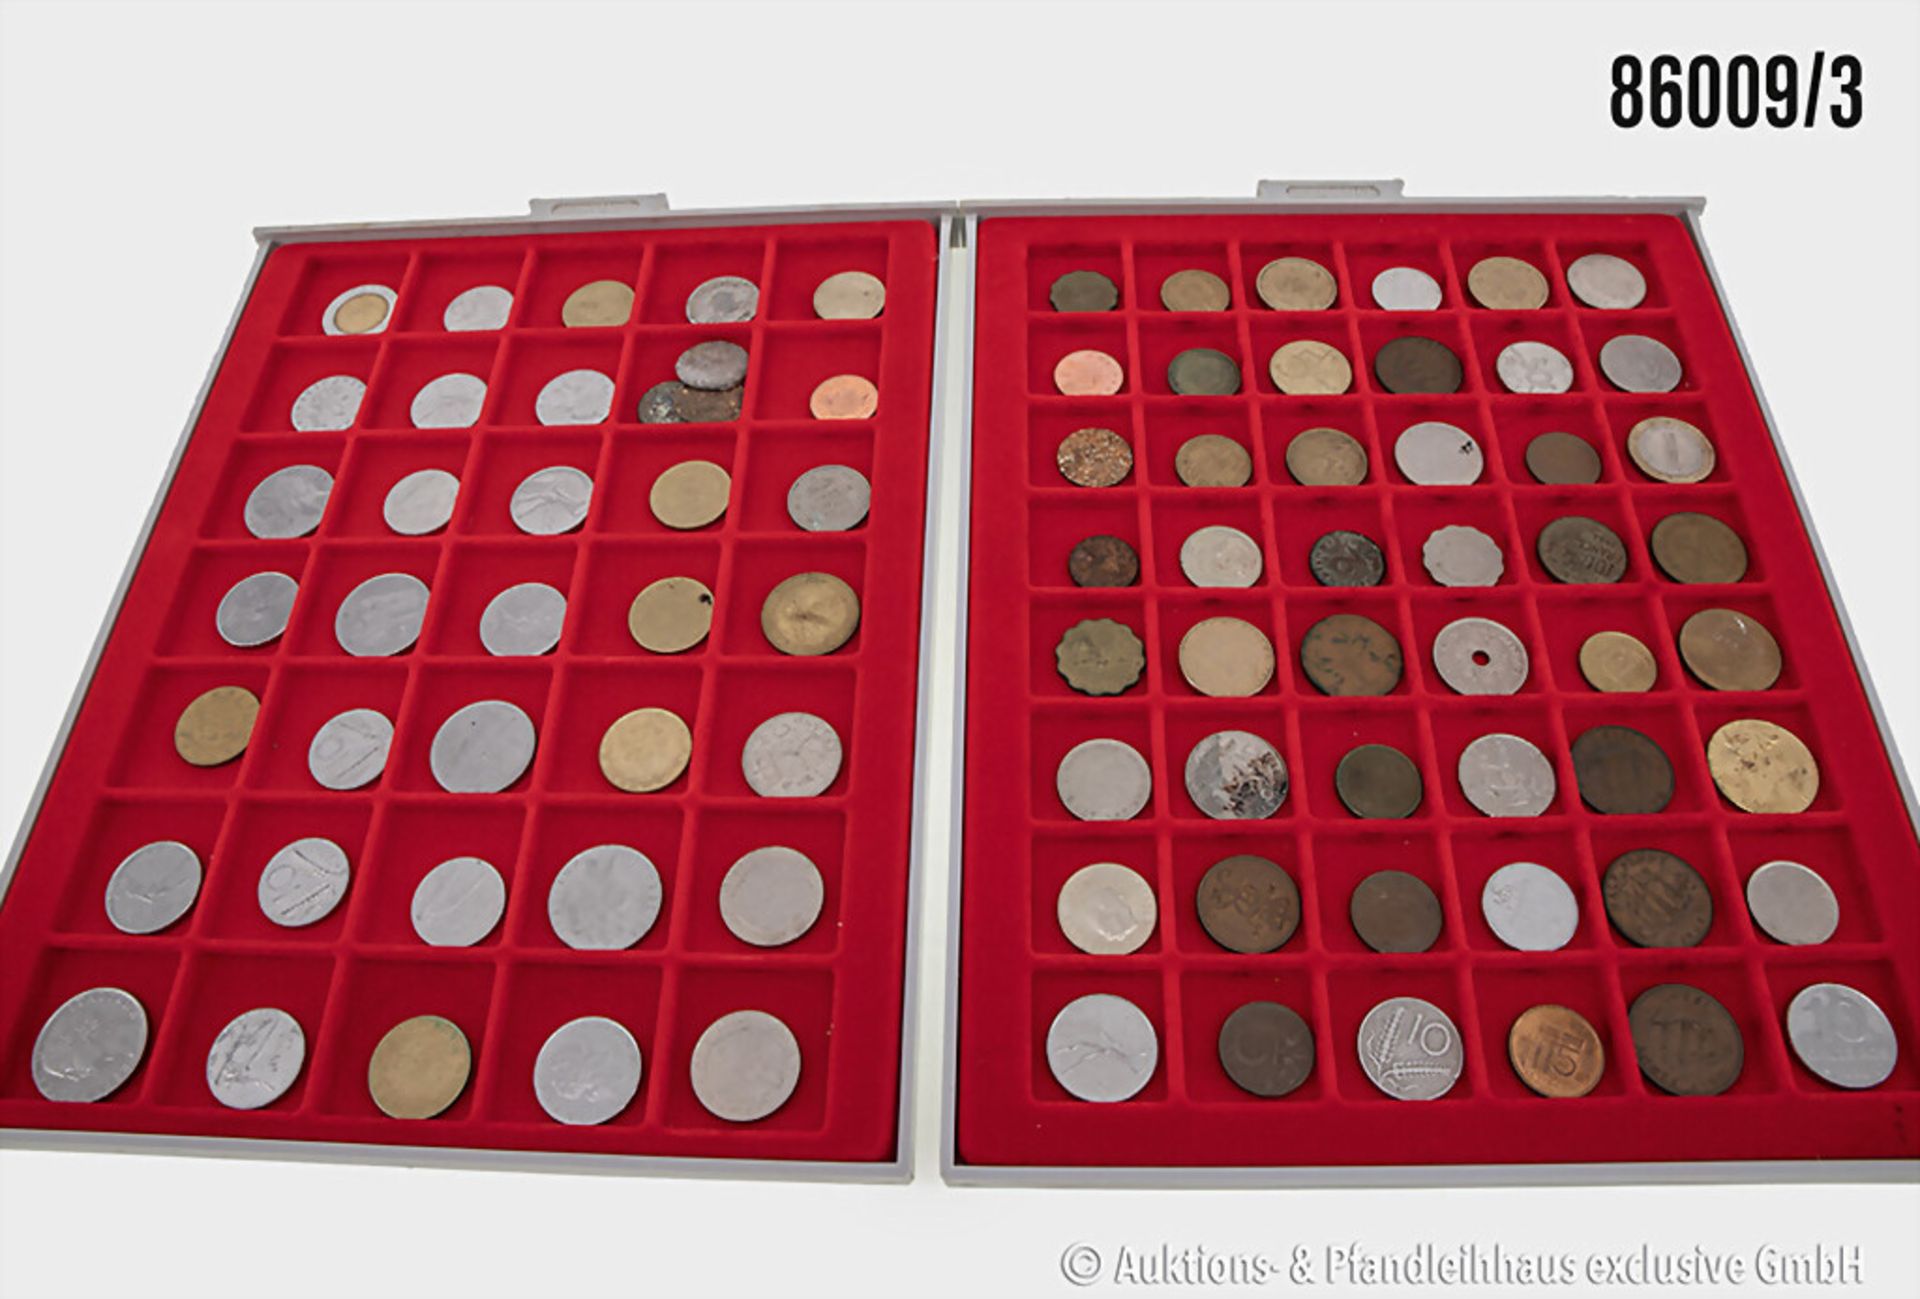 Konvolut Münzen in 6 Lindner Münzboxen, verschiedene Münzen Europa/Welt sowie 3 Münzen ... - Bild 3 aus 3